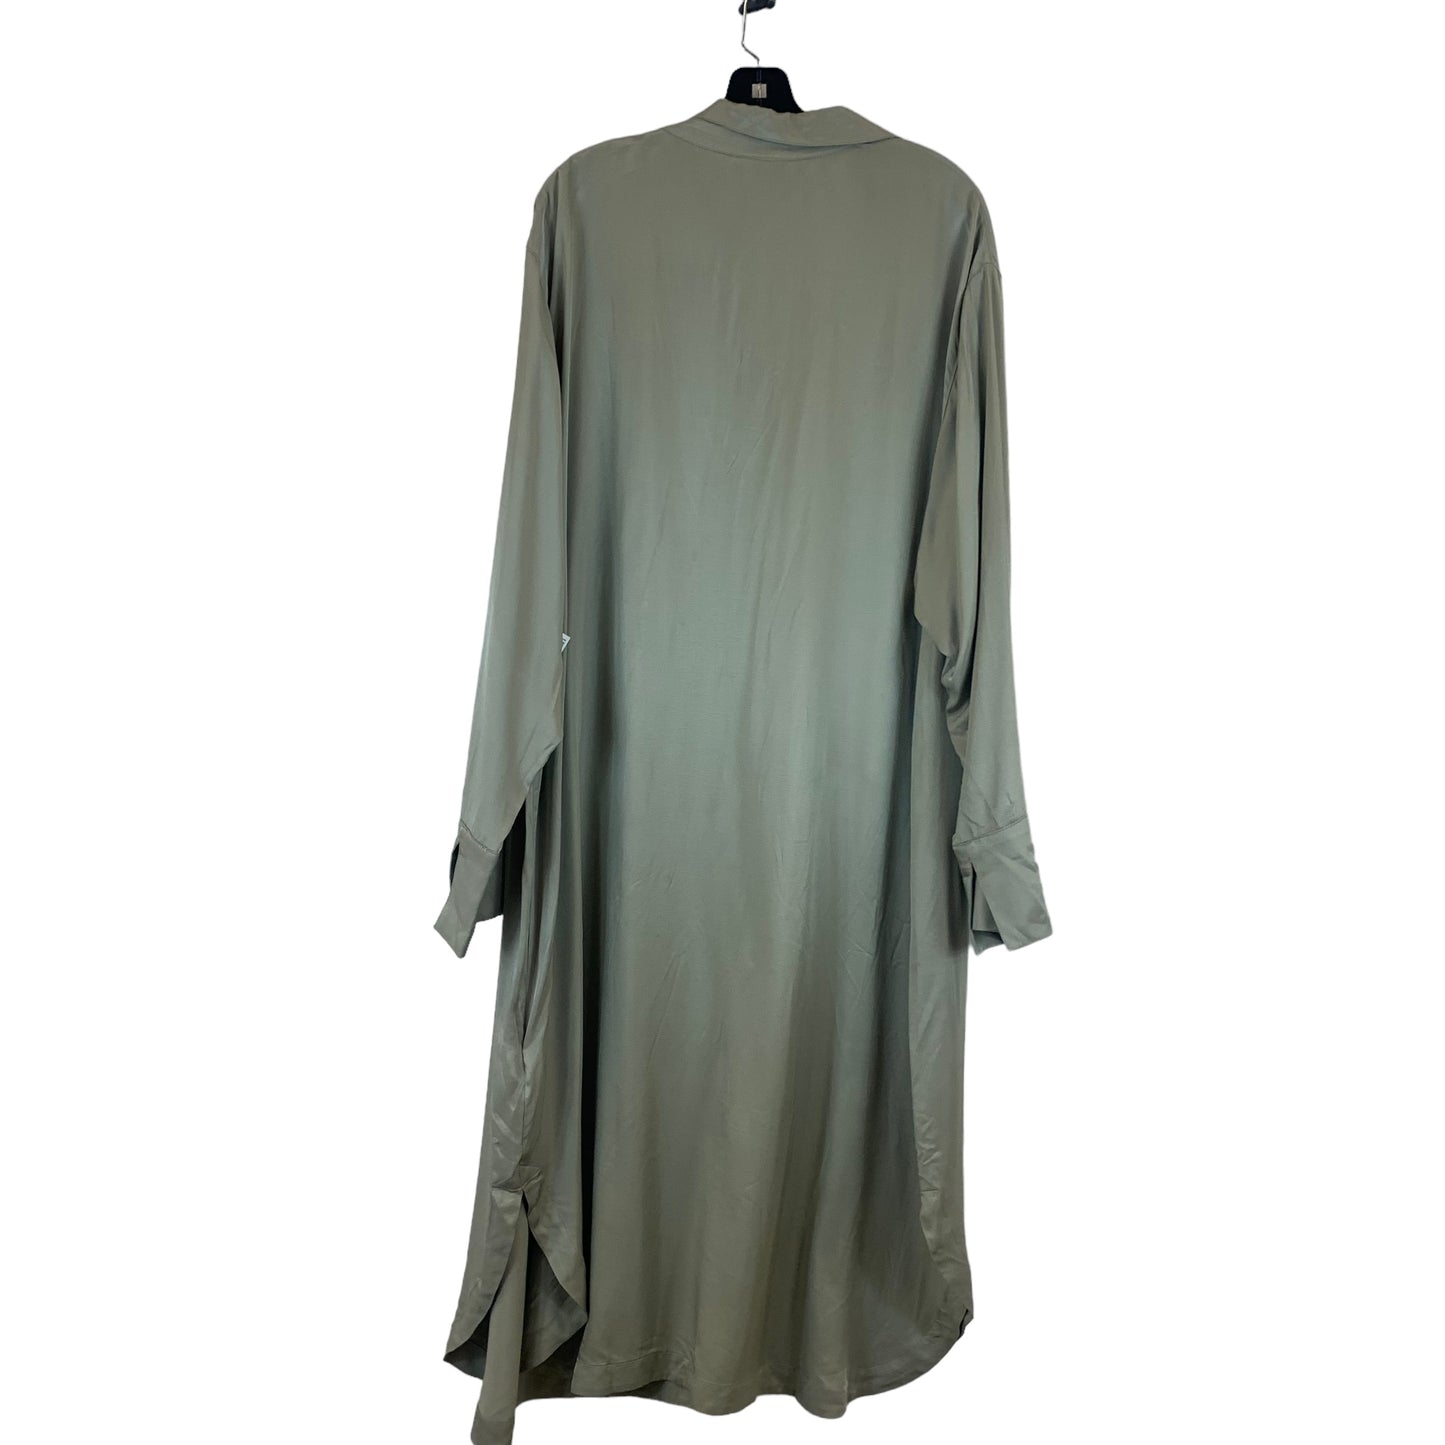 Dress Casual Midi By H&m  Size: Xxl